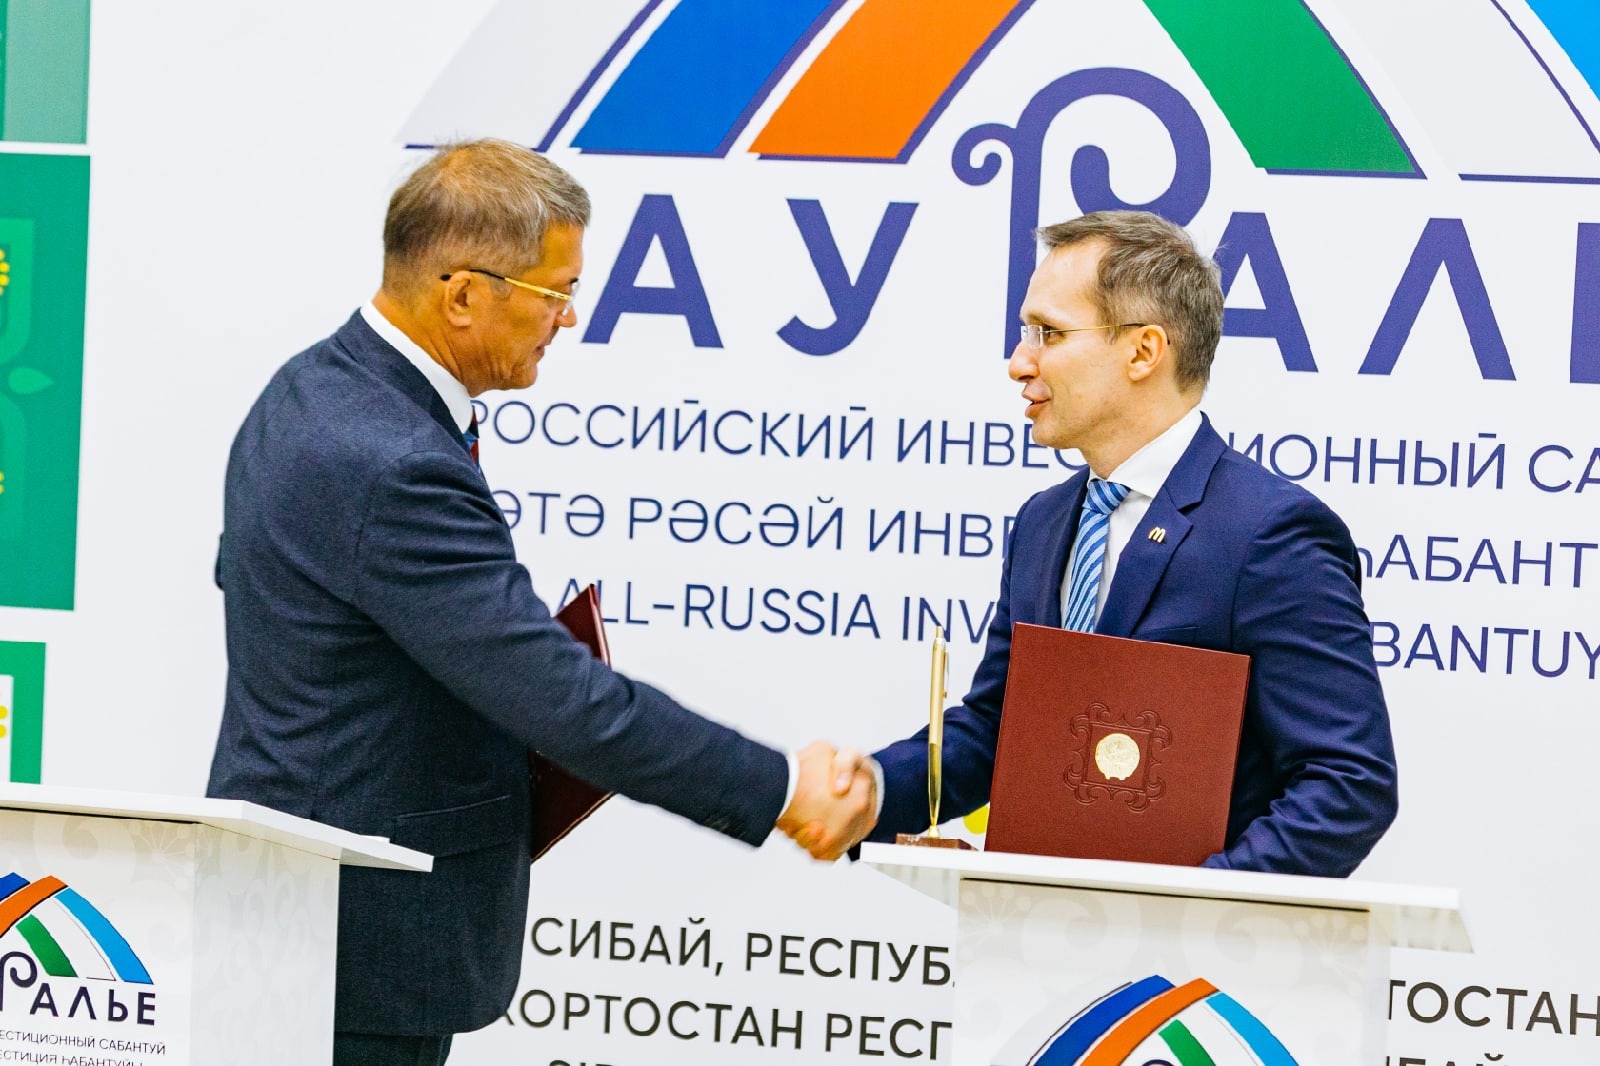 В Республике Башкортостан прошёл III Всероссийский инвестиционный сабантуй «Зауралье-2021»